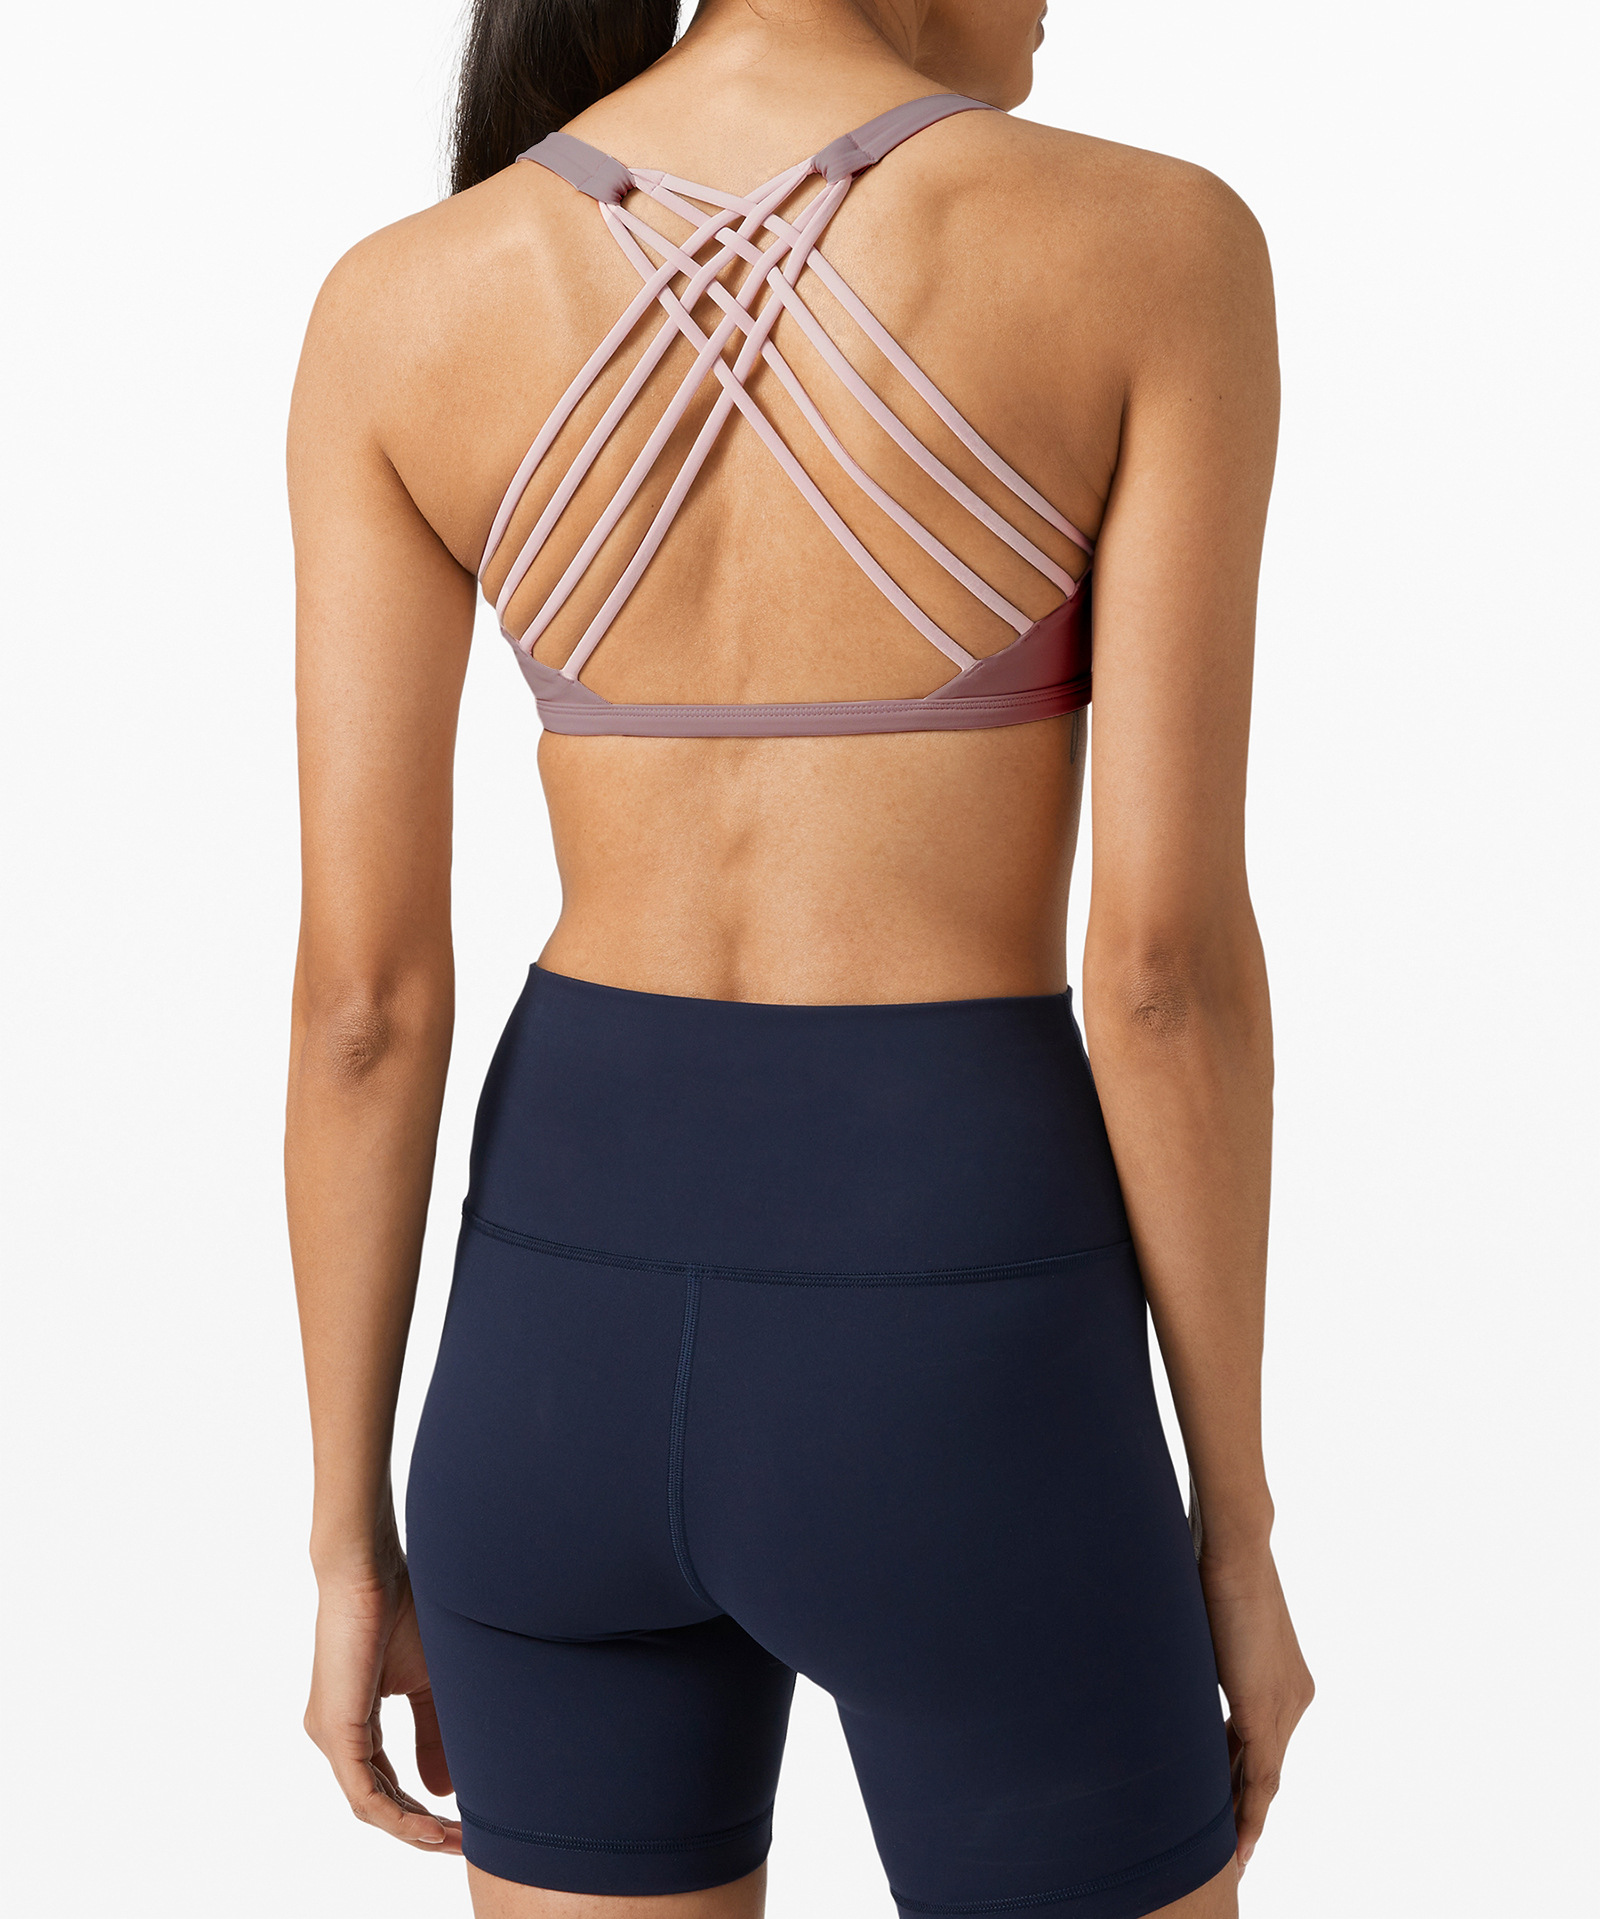 FANYAZU YOGA BRA women's strappy sports bra - back cross sexy wireless padded yoga bra